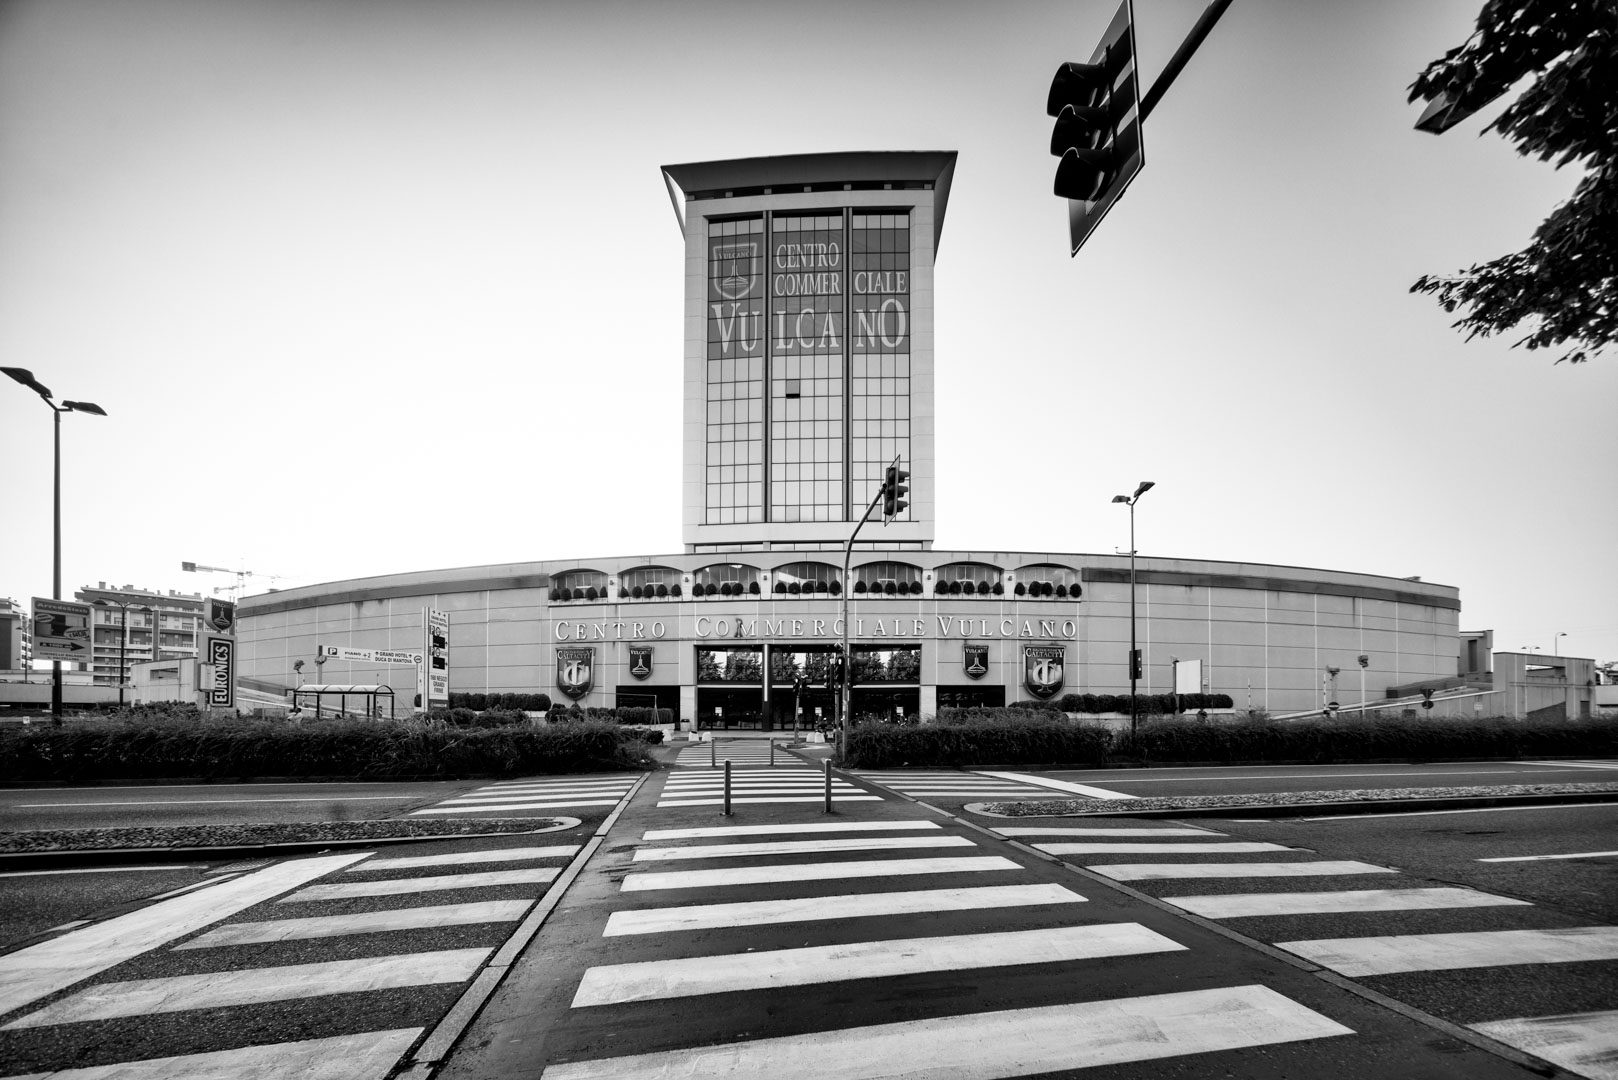 Nella Città - Periferie di Milano - Progetto Fotografico di Architettura